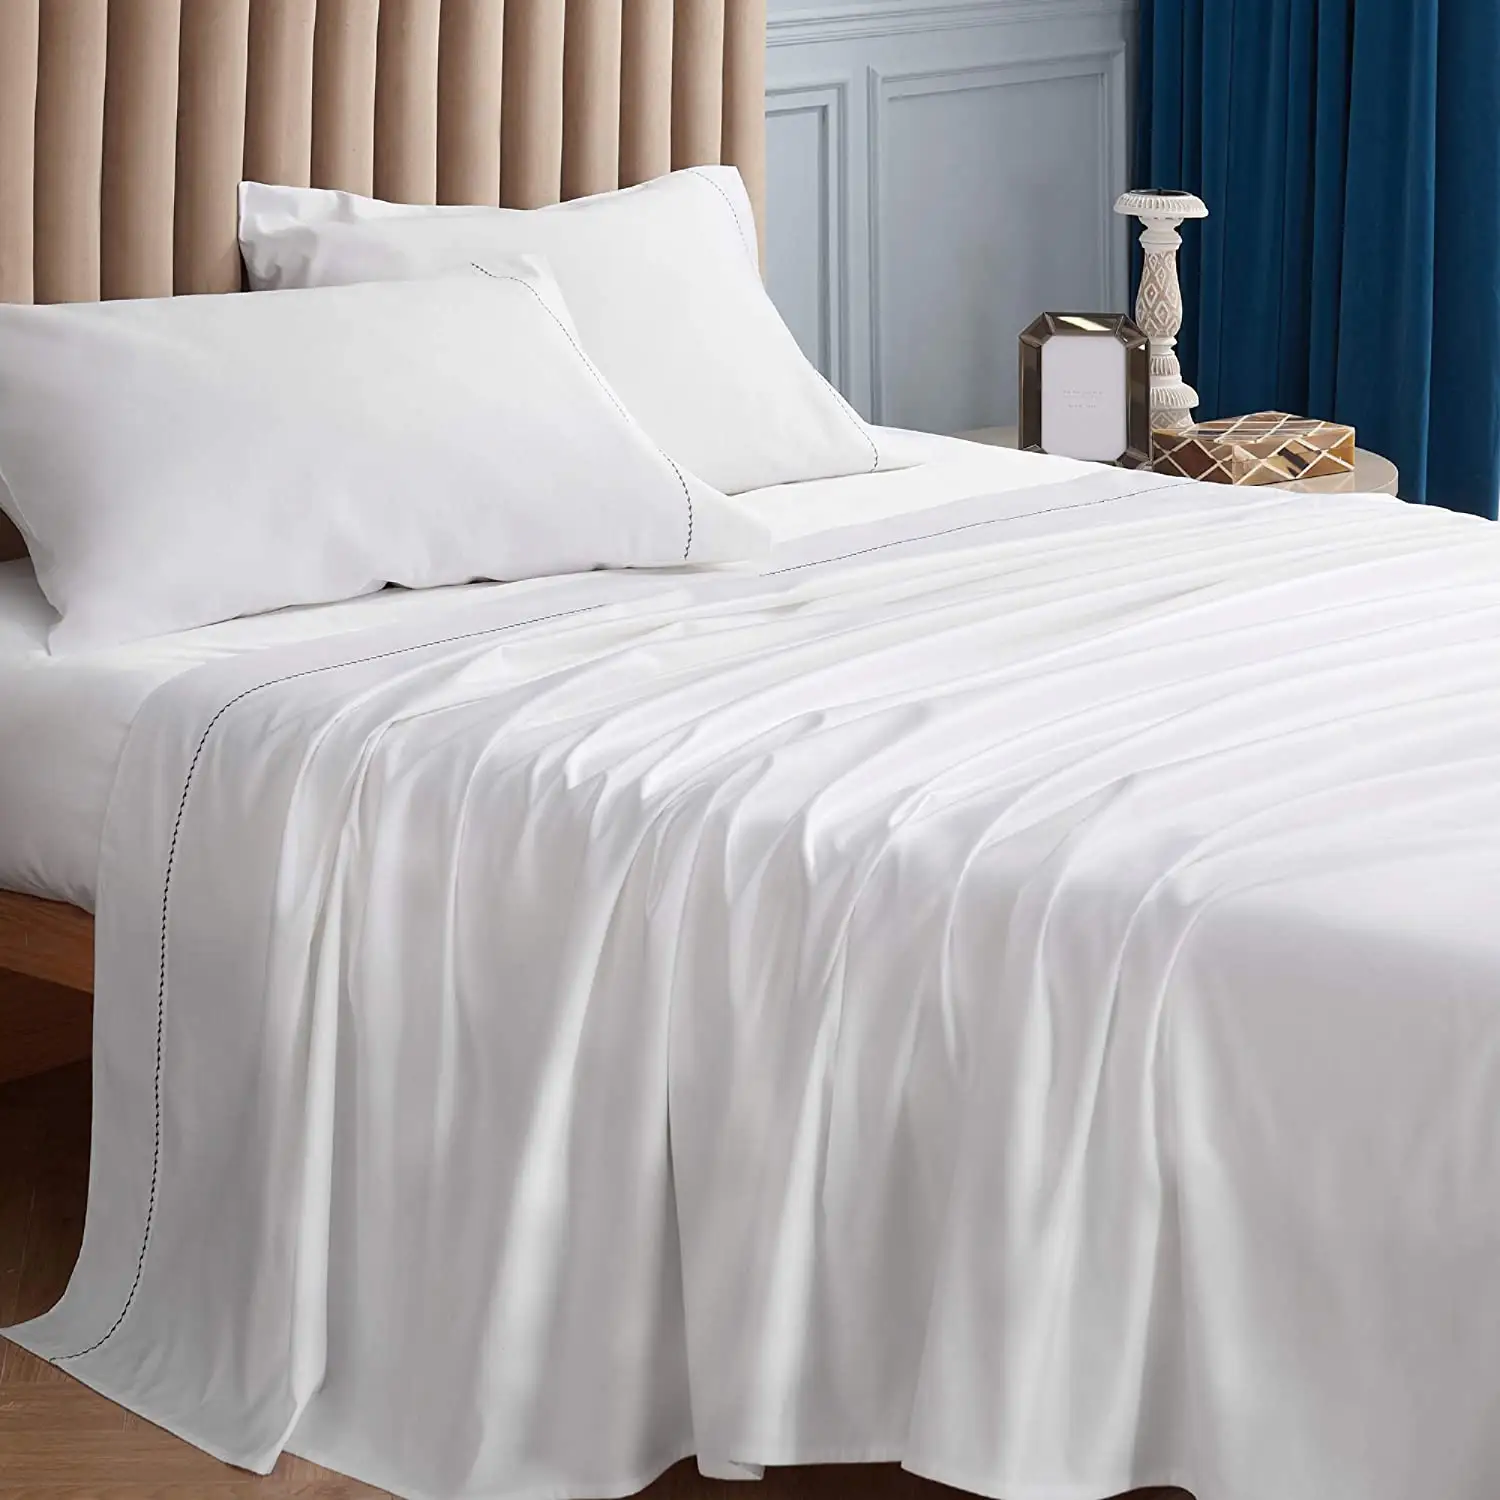 Juego de cama suave y cómoda para Hotel, sábanas de satén de algodón 100% egipcio, para todas las estaciones, 600TC